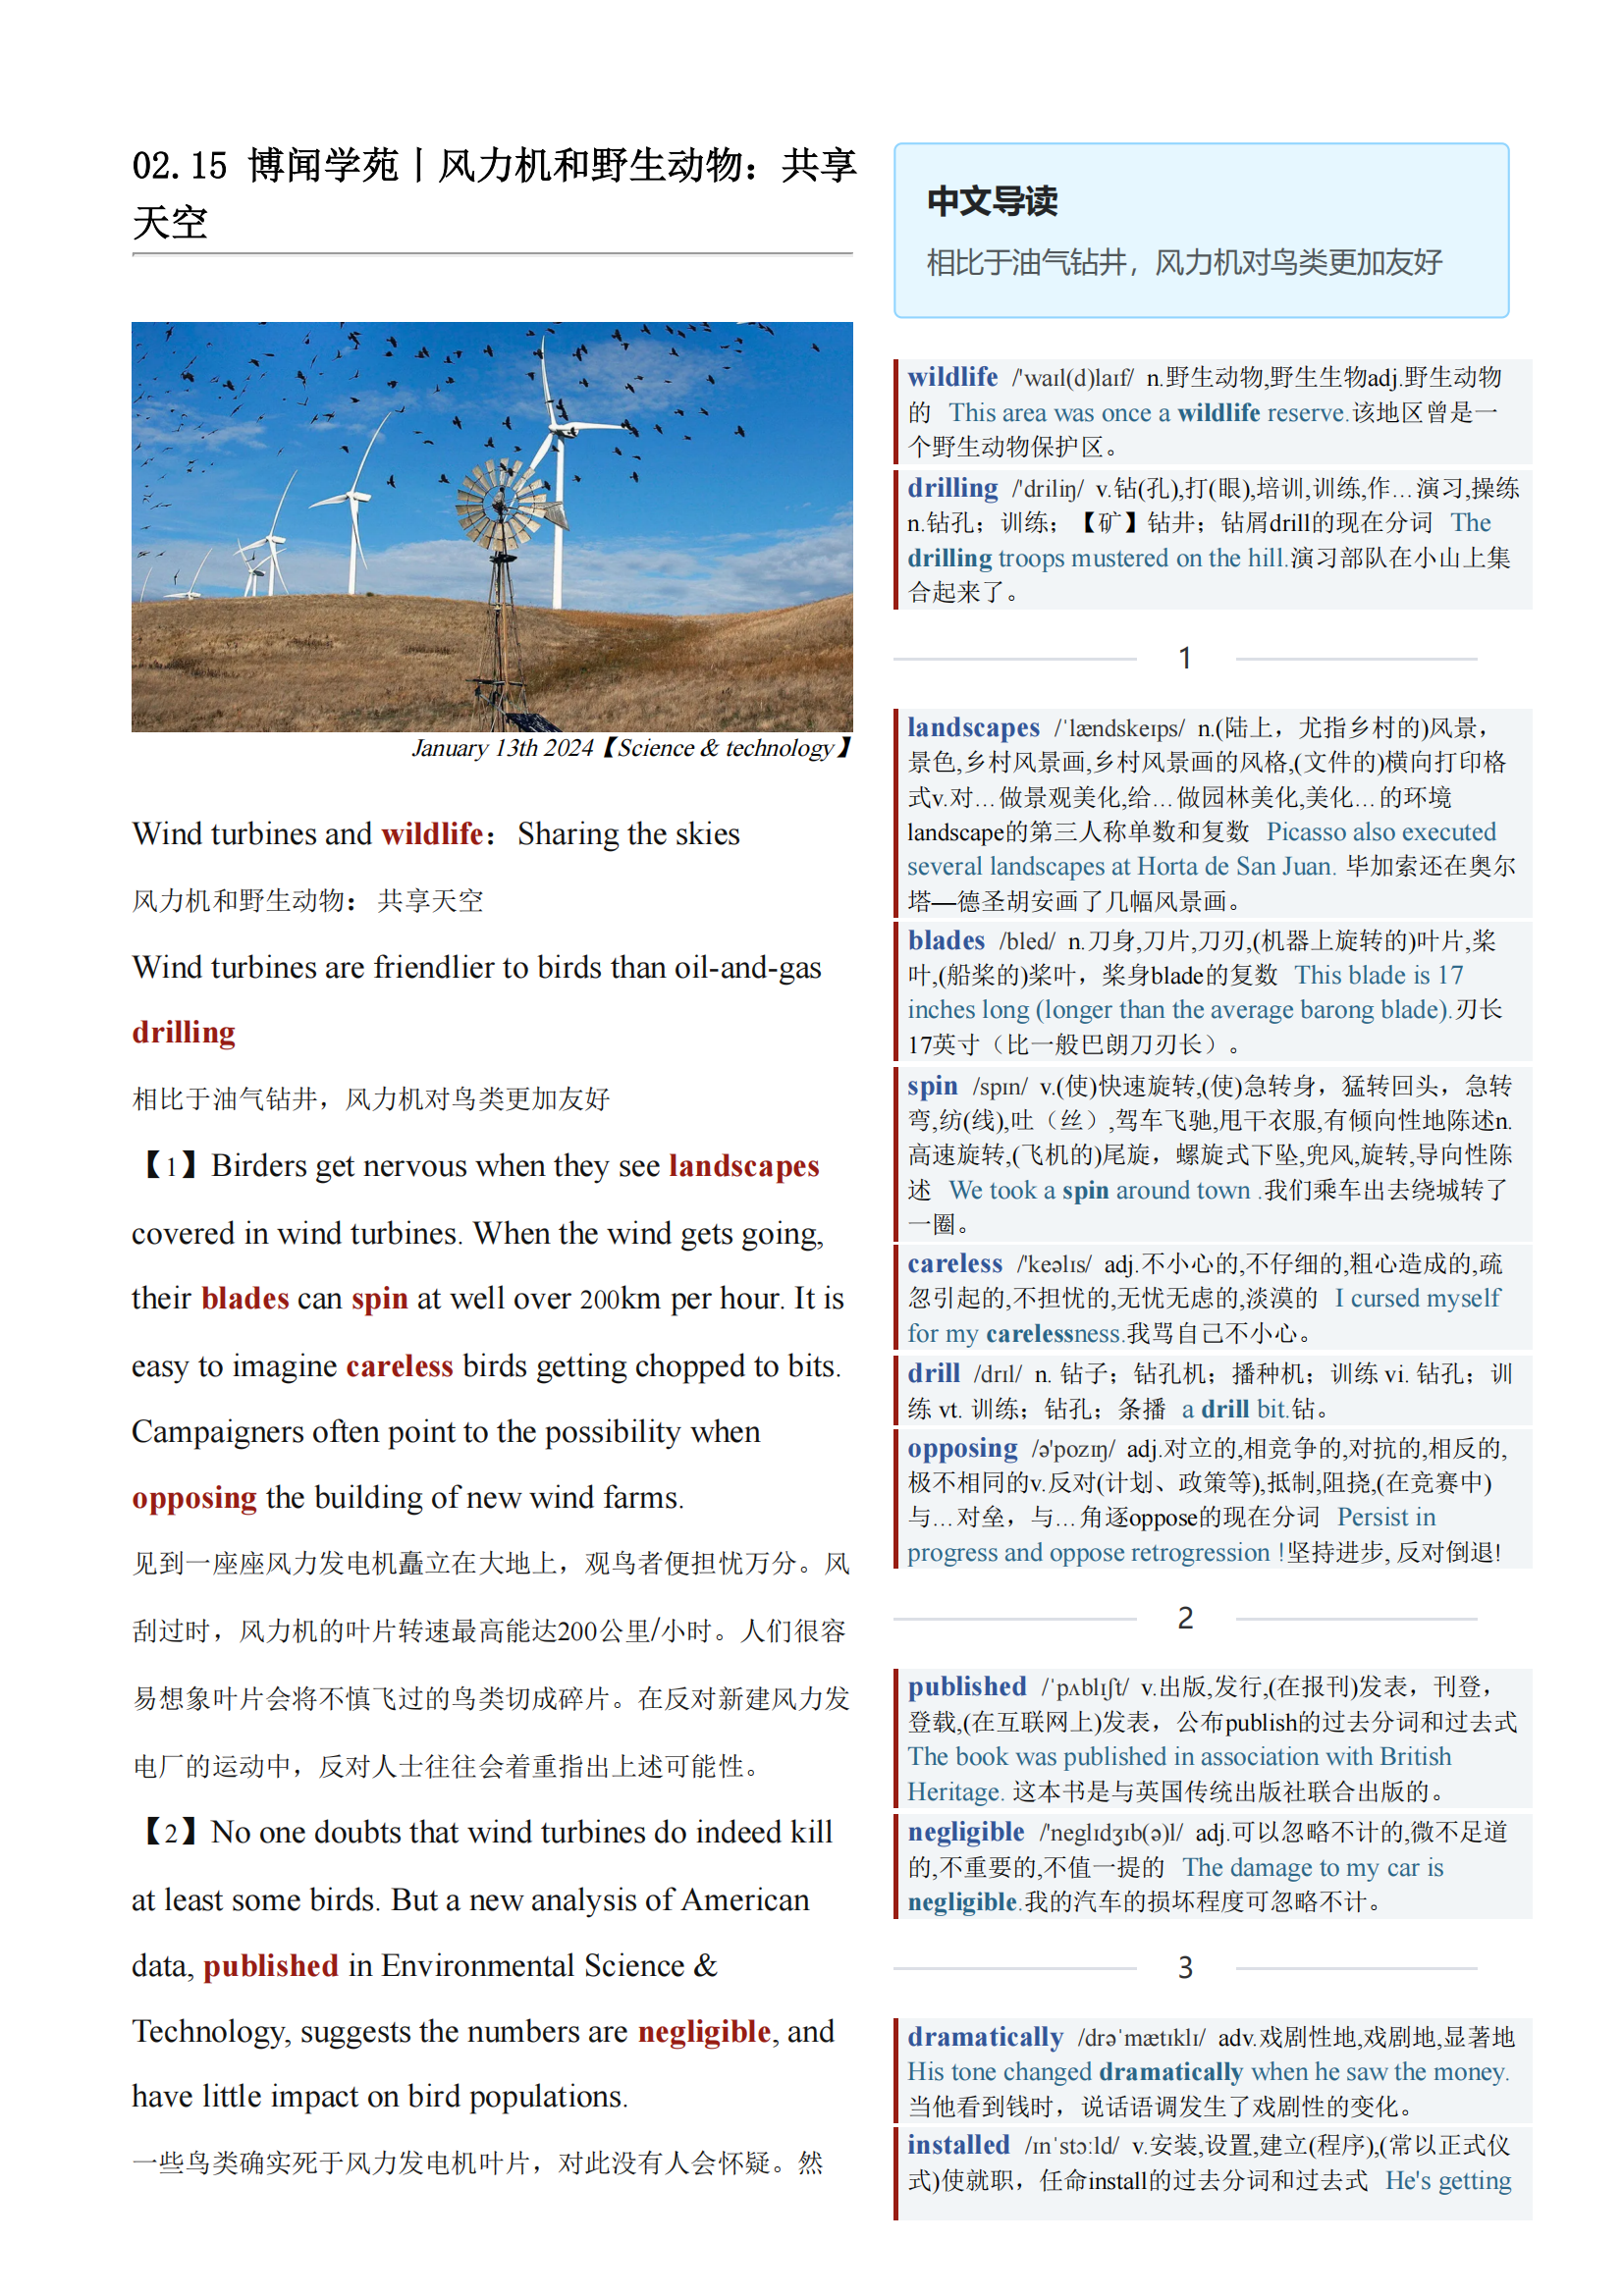 2024.02.15 经济学人双语精读丨风力机和野生动物：共享天空 (.PDF/DOC/MP3)